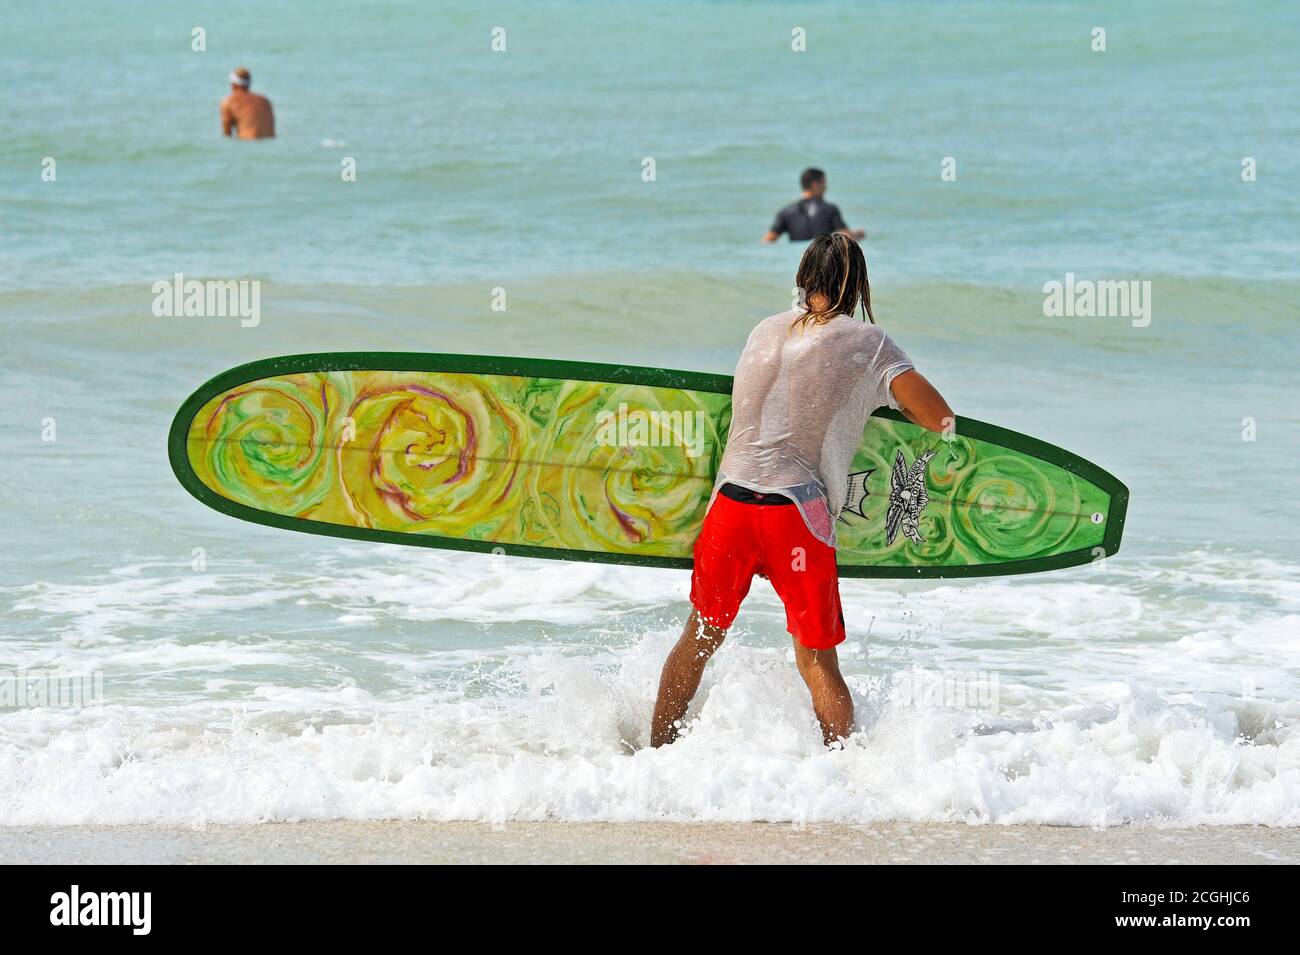 HOLMES BEACH, ANNA MARIA ISLAND, FL / USA - 4 ottobre 2013: Surfers sull'isola di Anna Maria approfittando delle onde più grandi del normale nel Gul Foto Stock